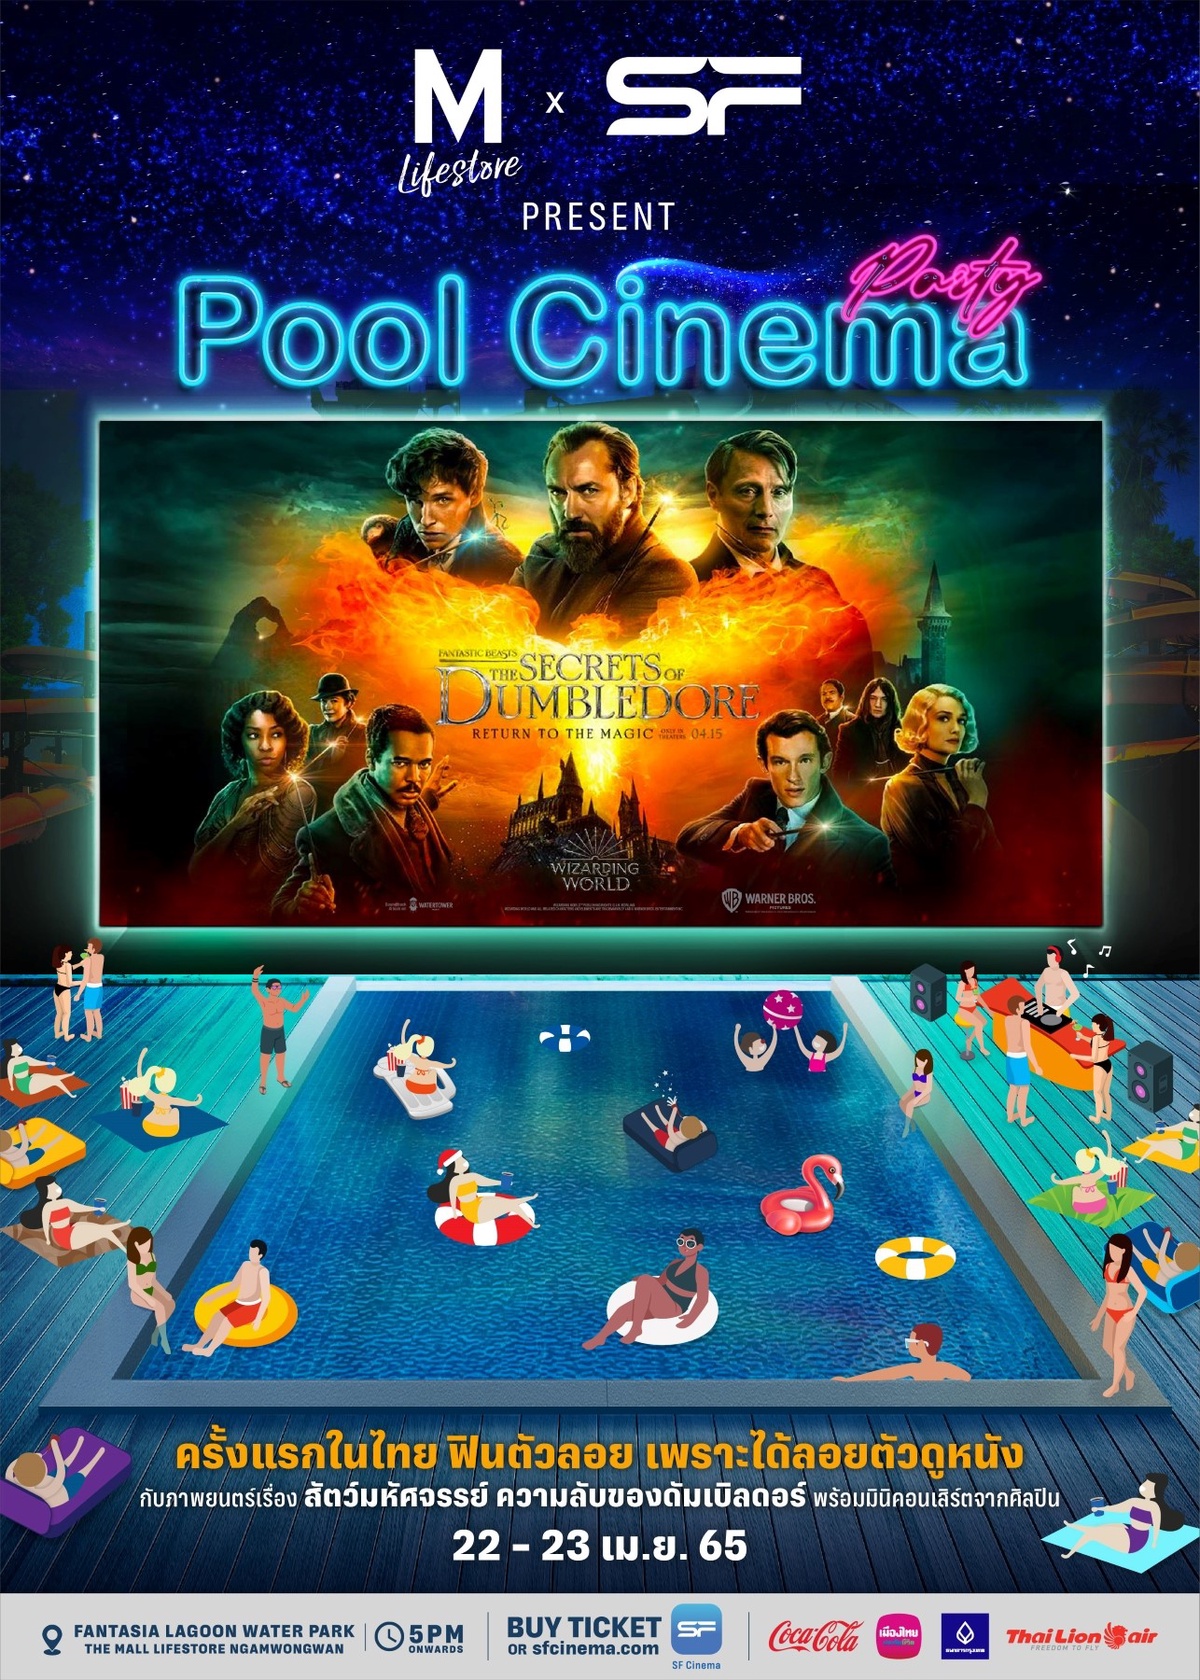 เอส เอฟ ร่วมกับ เดอะมอลล์ กรุ๊ป ต้อนรับซัมเมอร์จัด Pool Cinema Party ดูหนังกลางสวนน้ำ ครั้งแรกในไทย